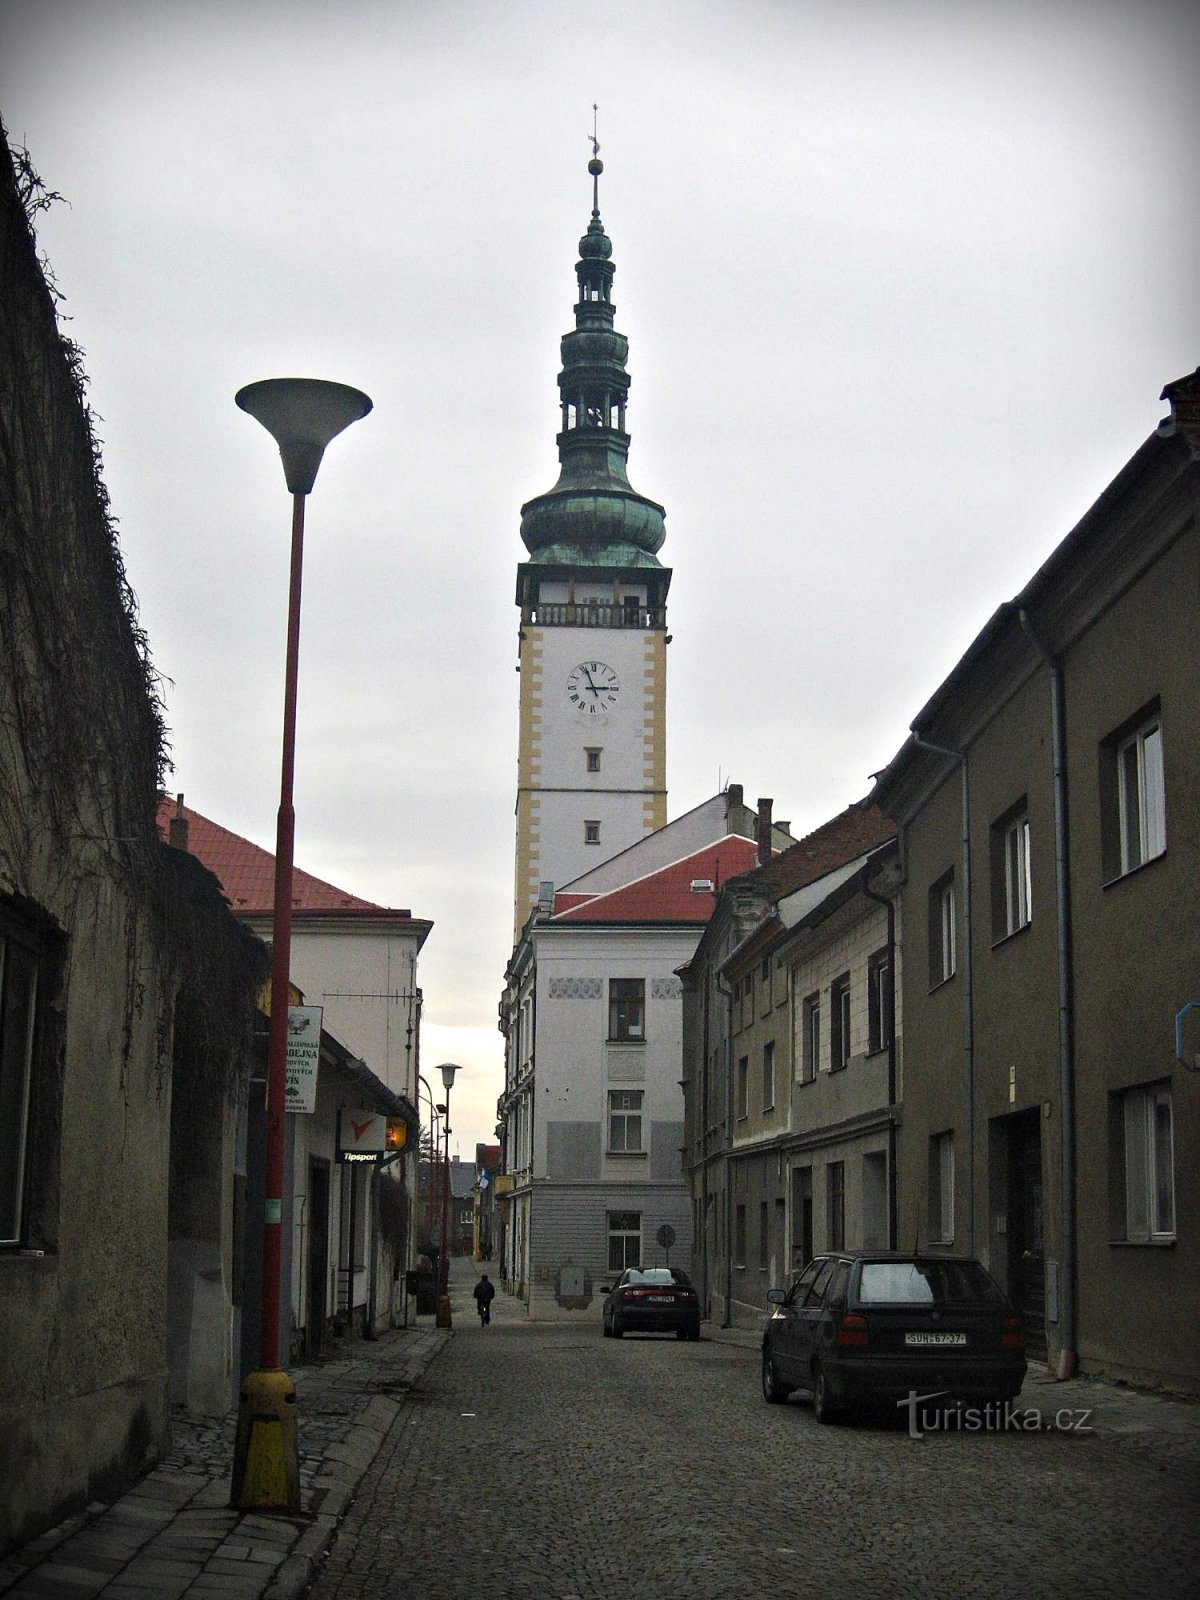 Primăria Litovel și turnul său